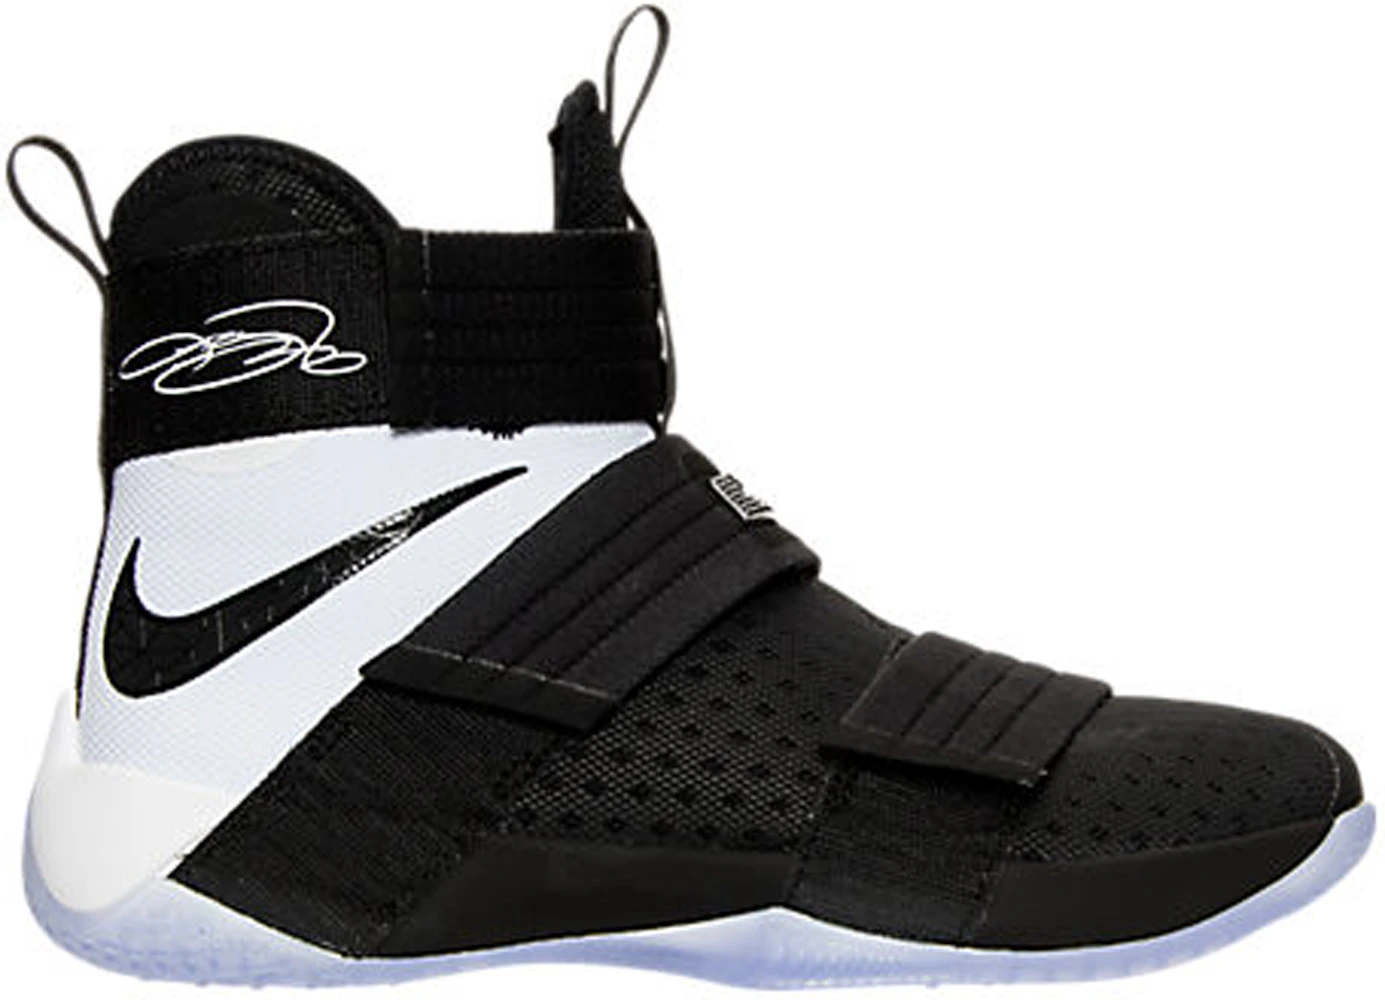 Nike LeBron Zoom Soldier 10 Black White Uomo - 844378-001 - IT